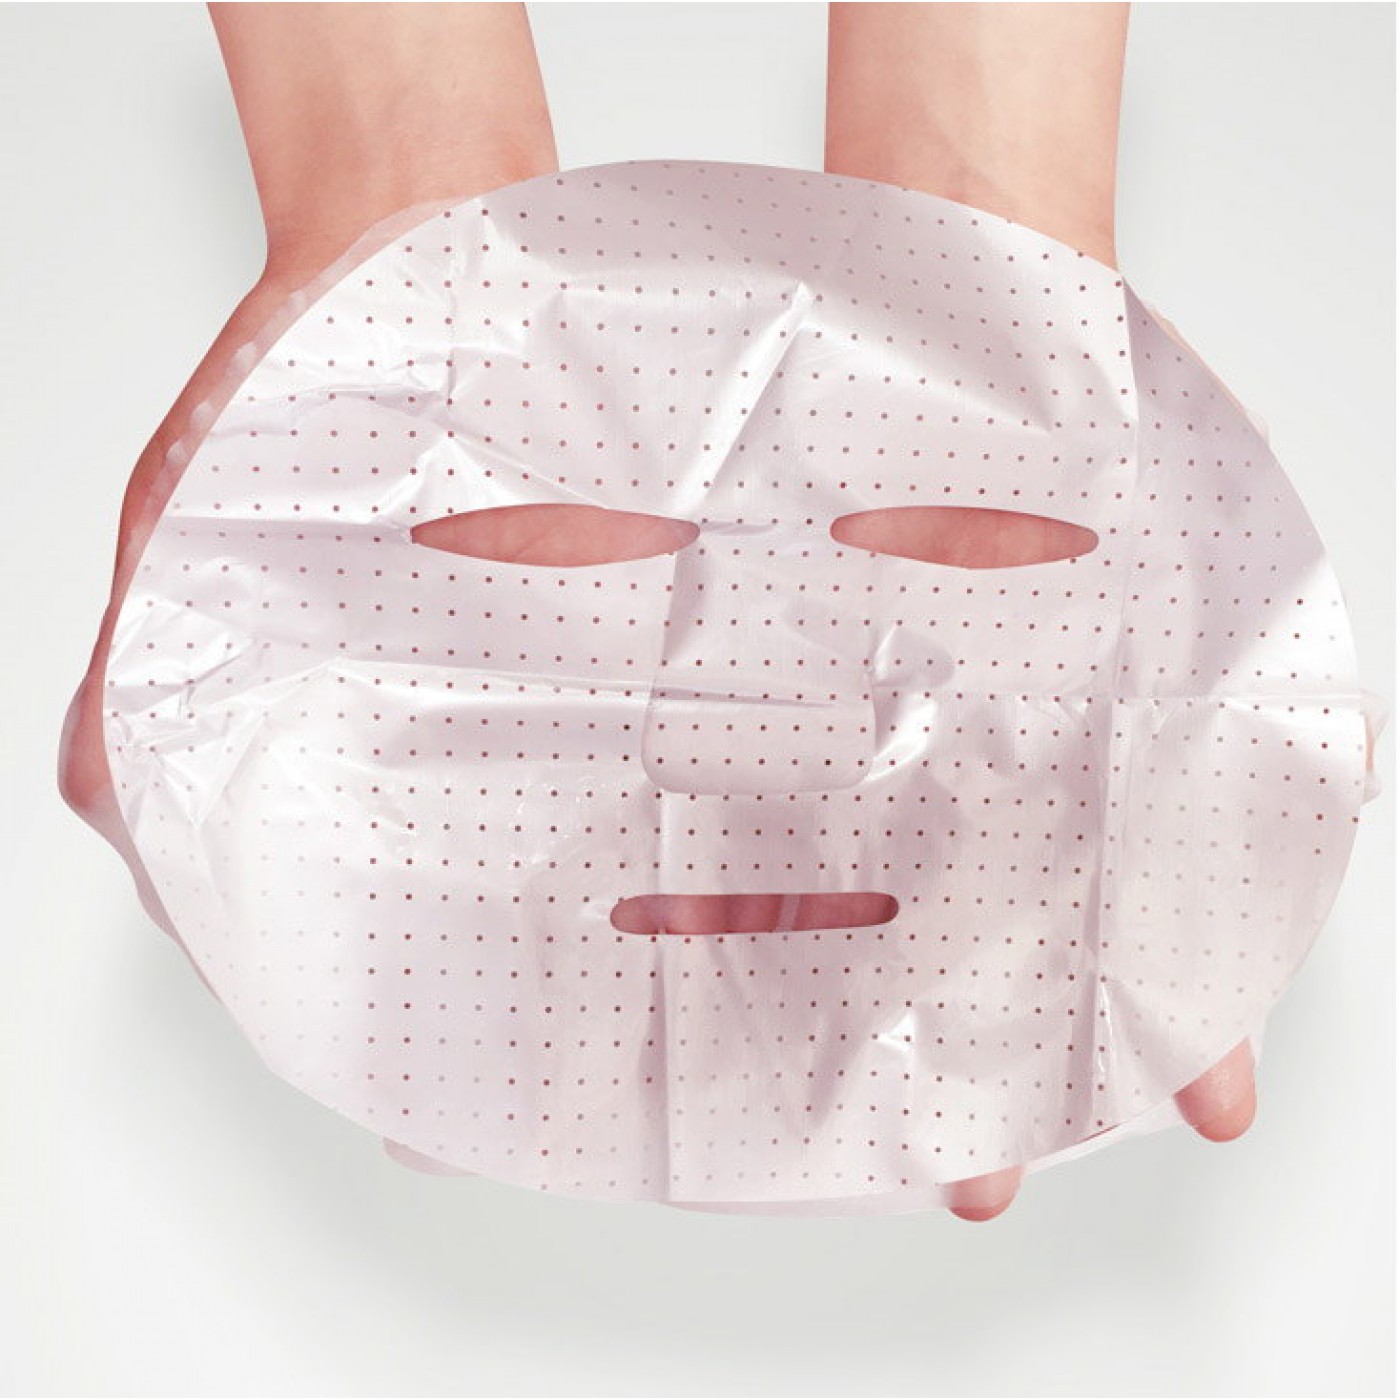 Как применять тканевую маску. Маска для лица. Тканевые маски для лица. Маски для лица упаковка. Матерчатая маска для лица.